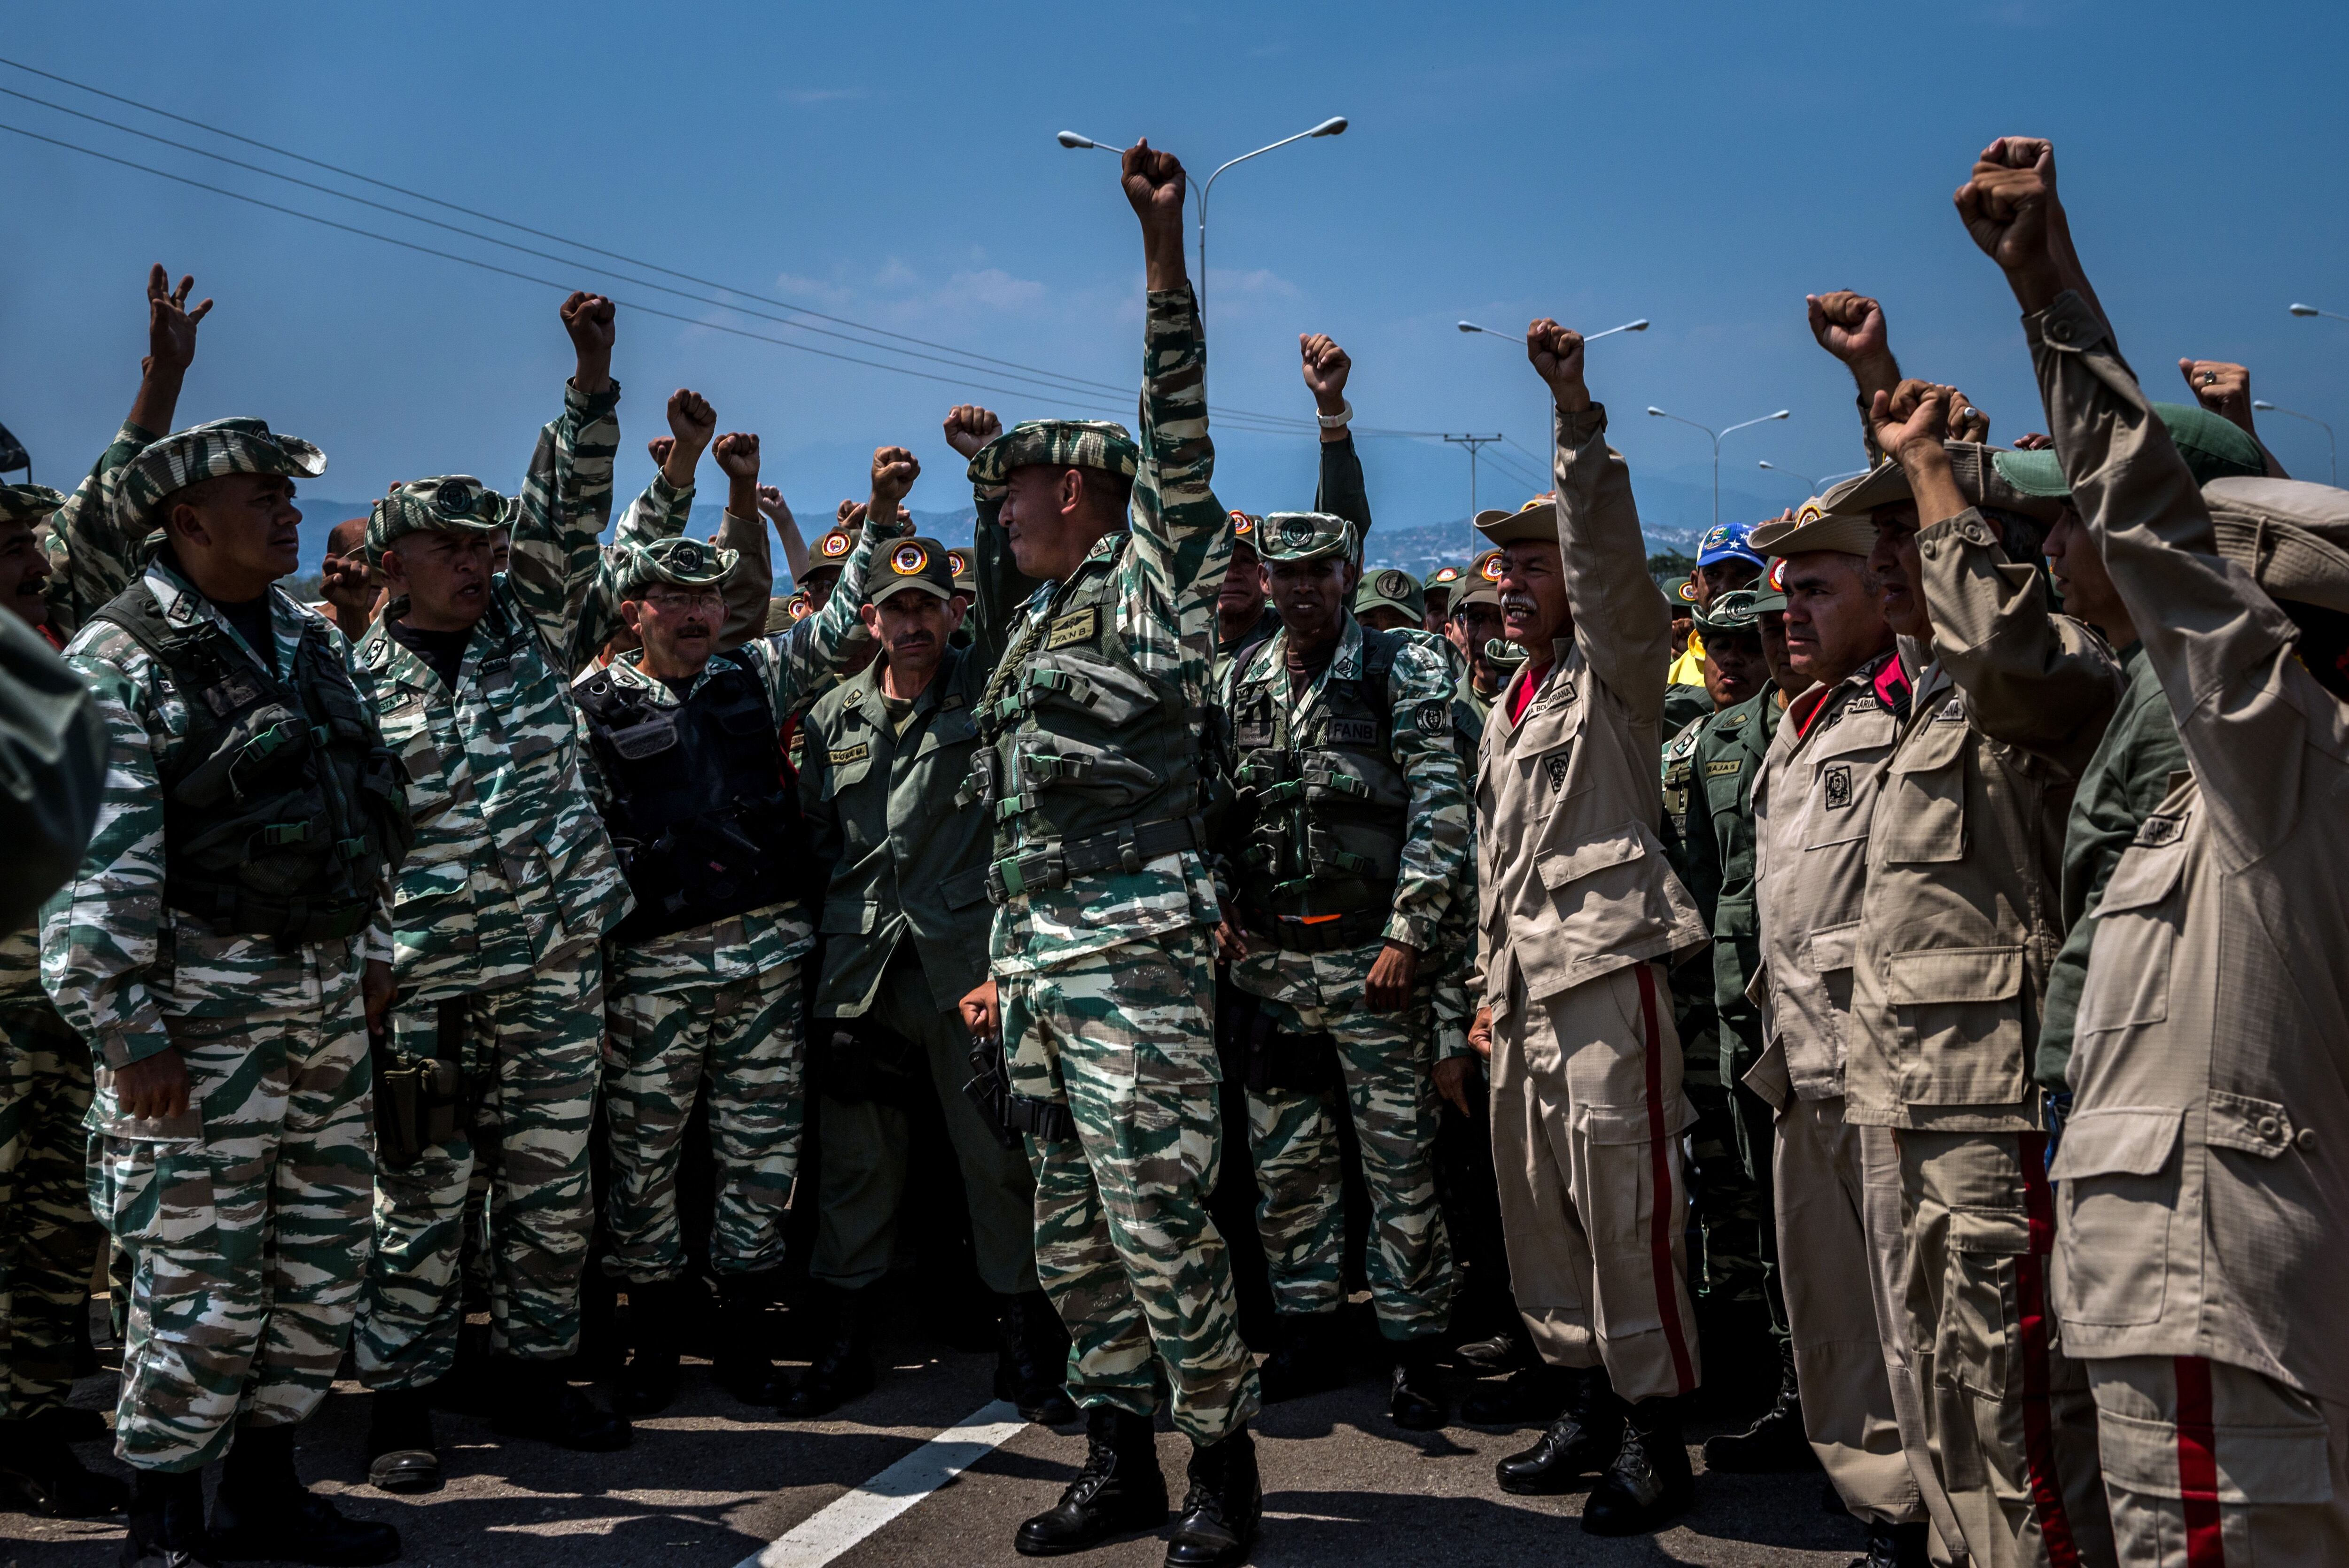 Soldados venezolanos y miembros de la milicia alzan sus puños cerca del puente que conecta Venezuela y Colombia para que los medios del Estado graben mientras demuestran su apoyo al presidente Nicolás Maduro. (Meridith Kohut para The New York Times)